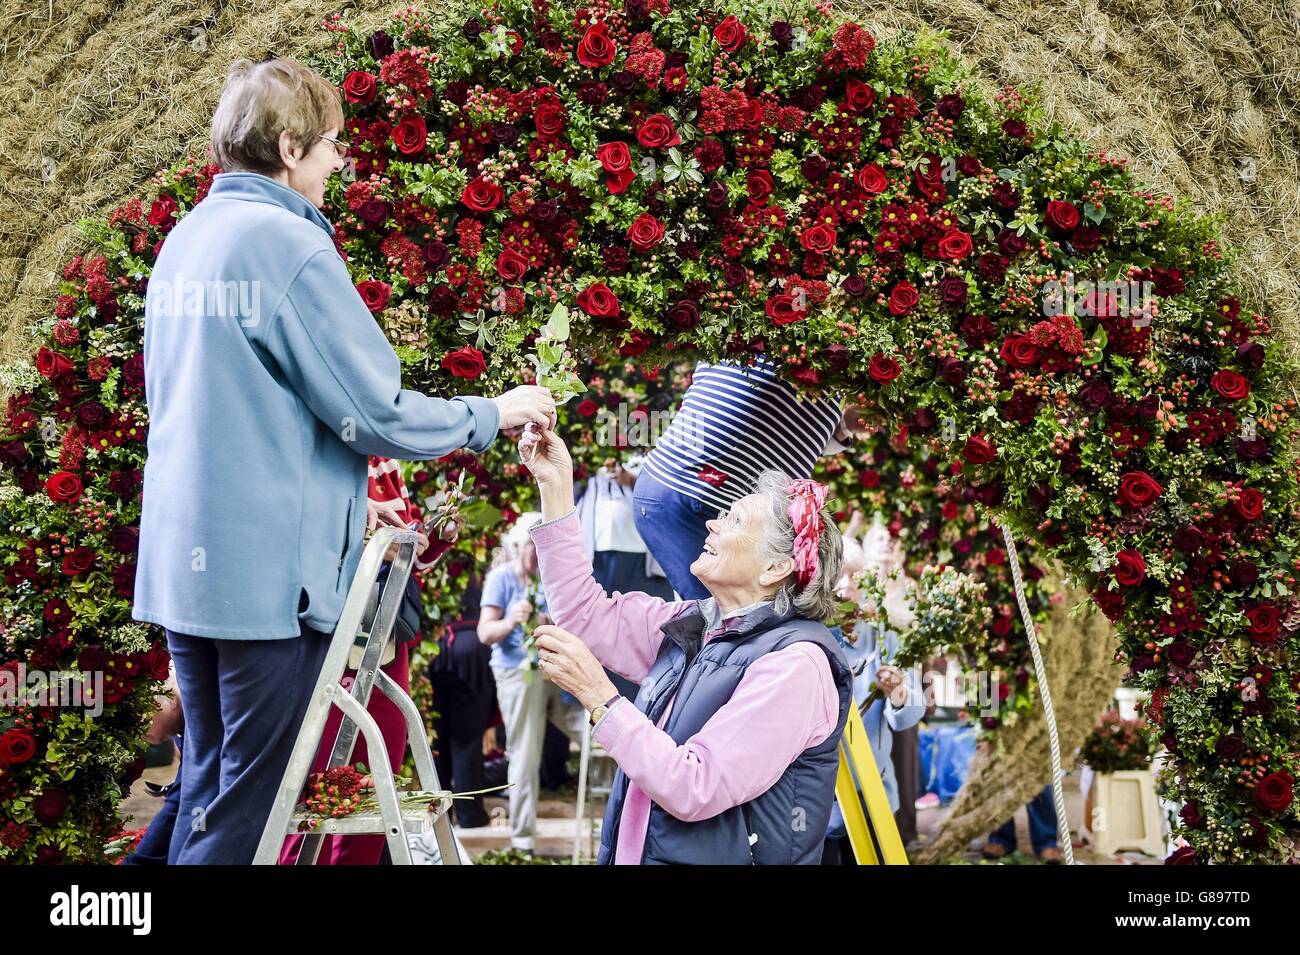 Las mujeres añaden rosas rojas y otra flora y fauna a una escultura dentro de la Catedral de Salisbury en el Festival de la Flor de la Flora Magna, que cuenta con 500 arreglos florales que forman parte de una enorme exhibición inspirada en la Carta Magna, con 30,000 floraciones. Foto de stock